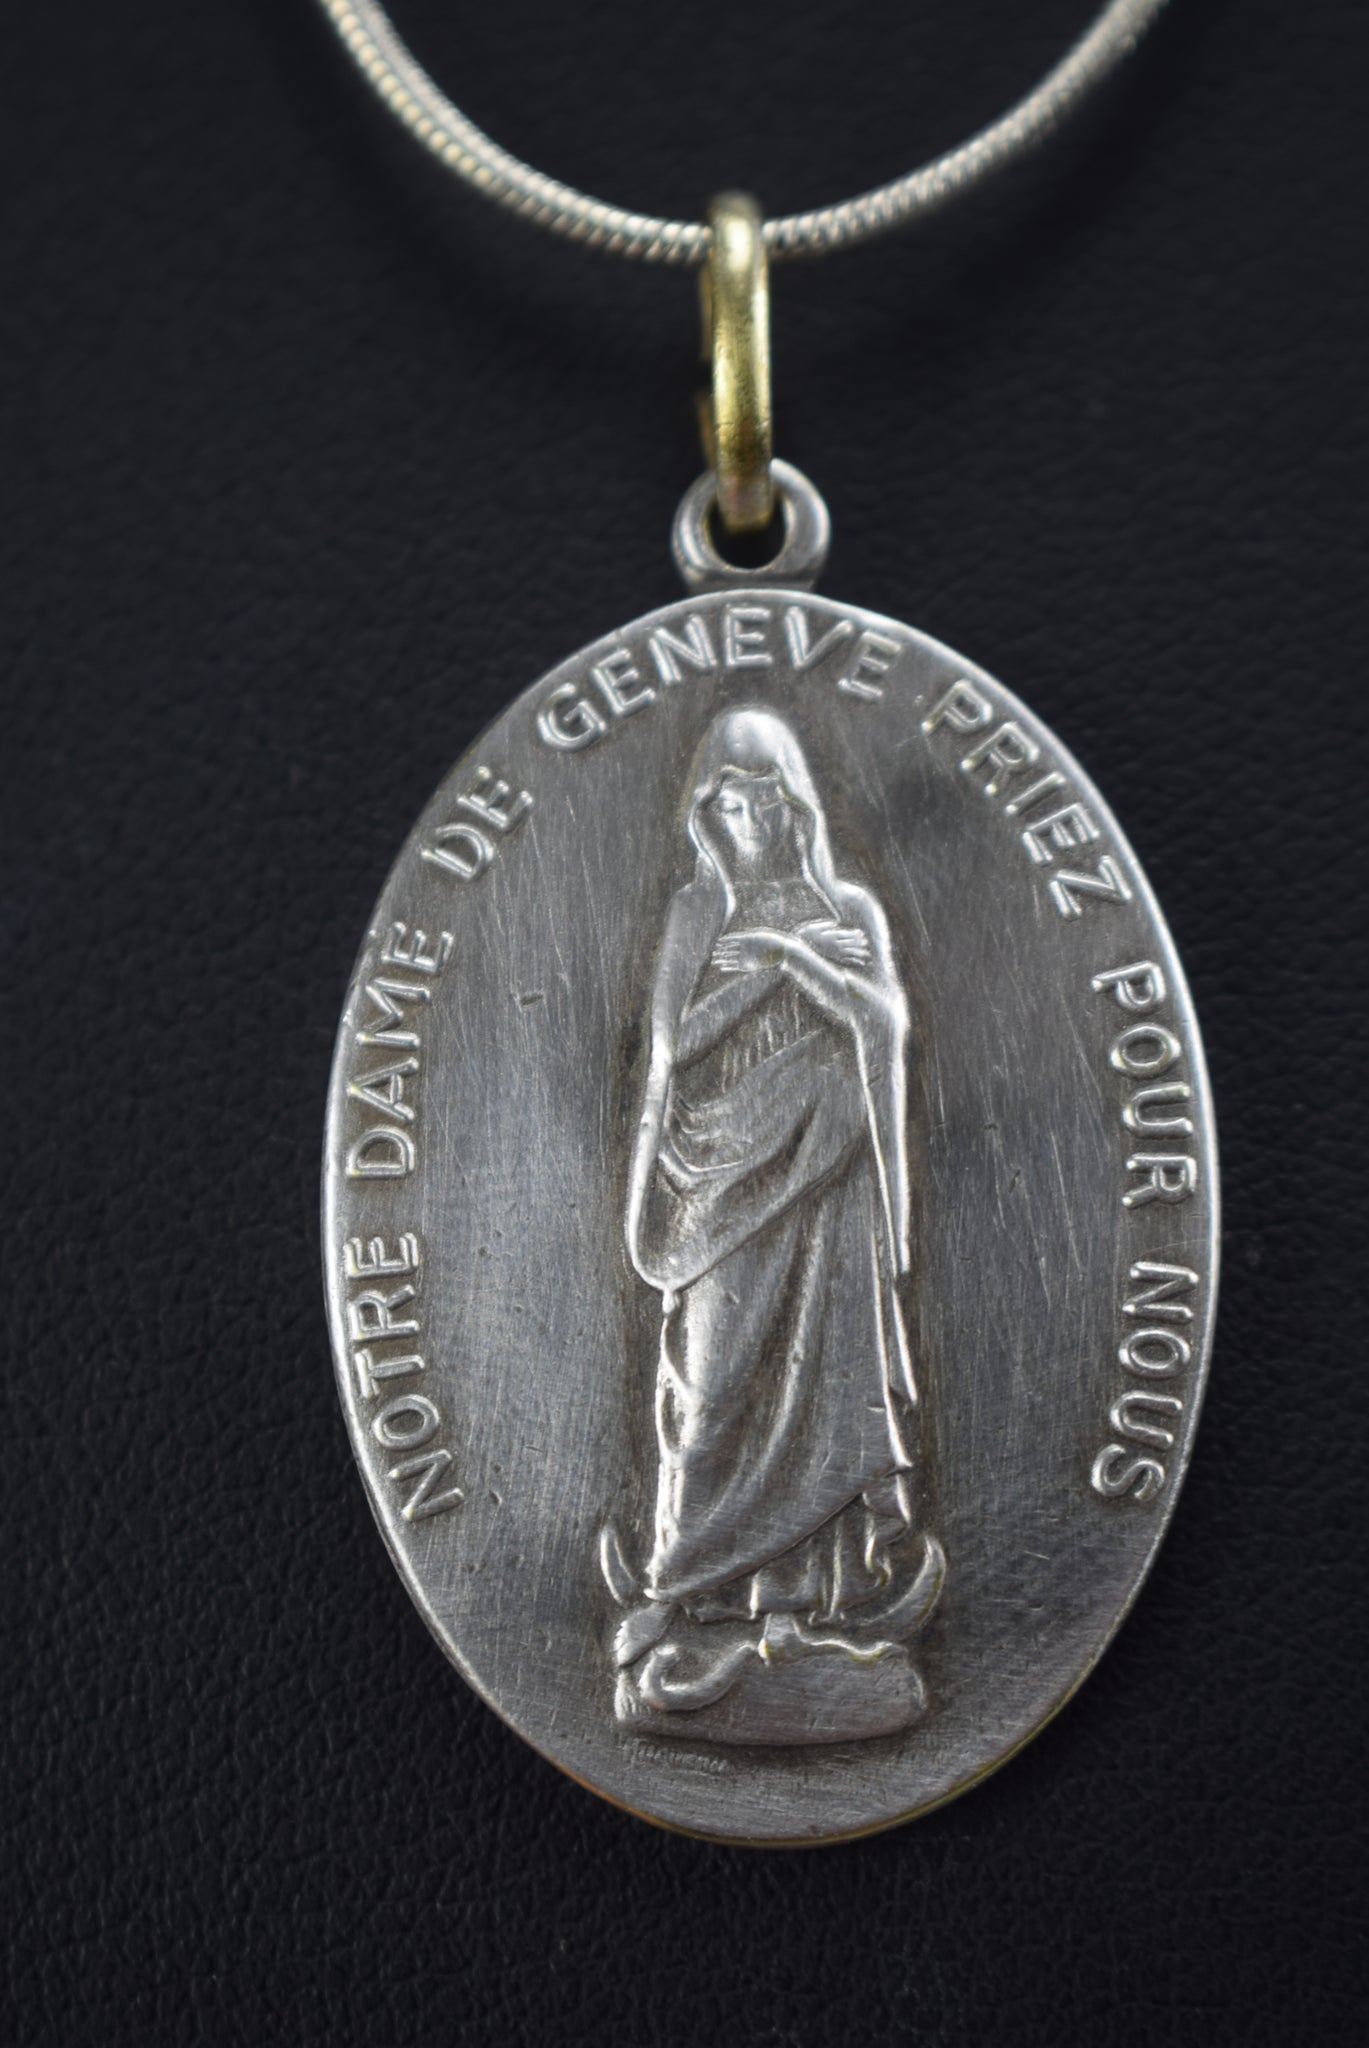 Notre Dame de Geneve Medal - Charmantiques